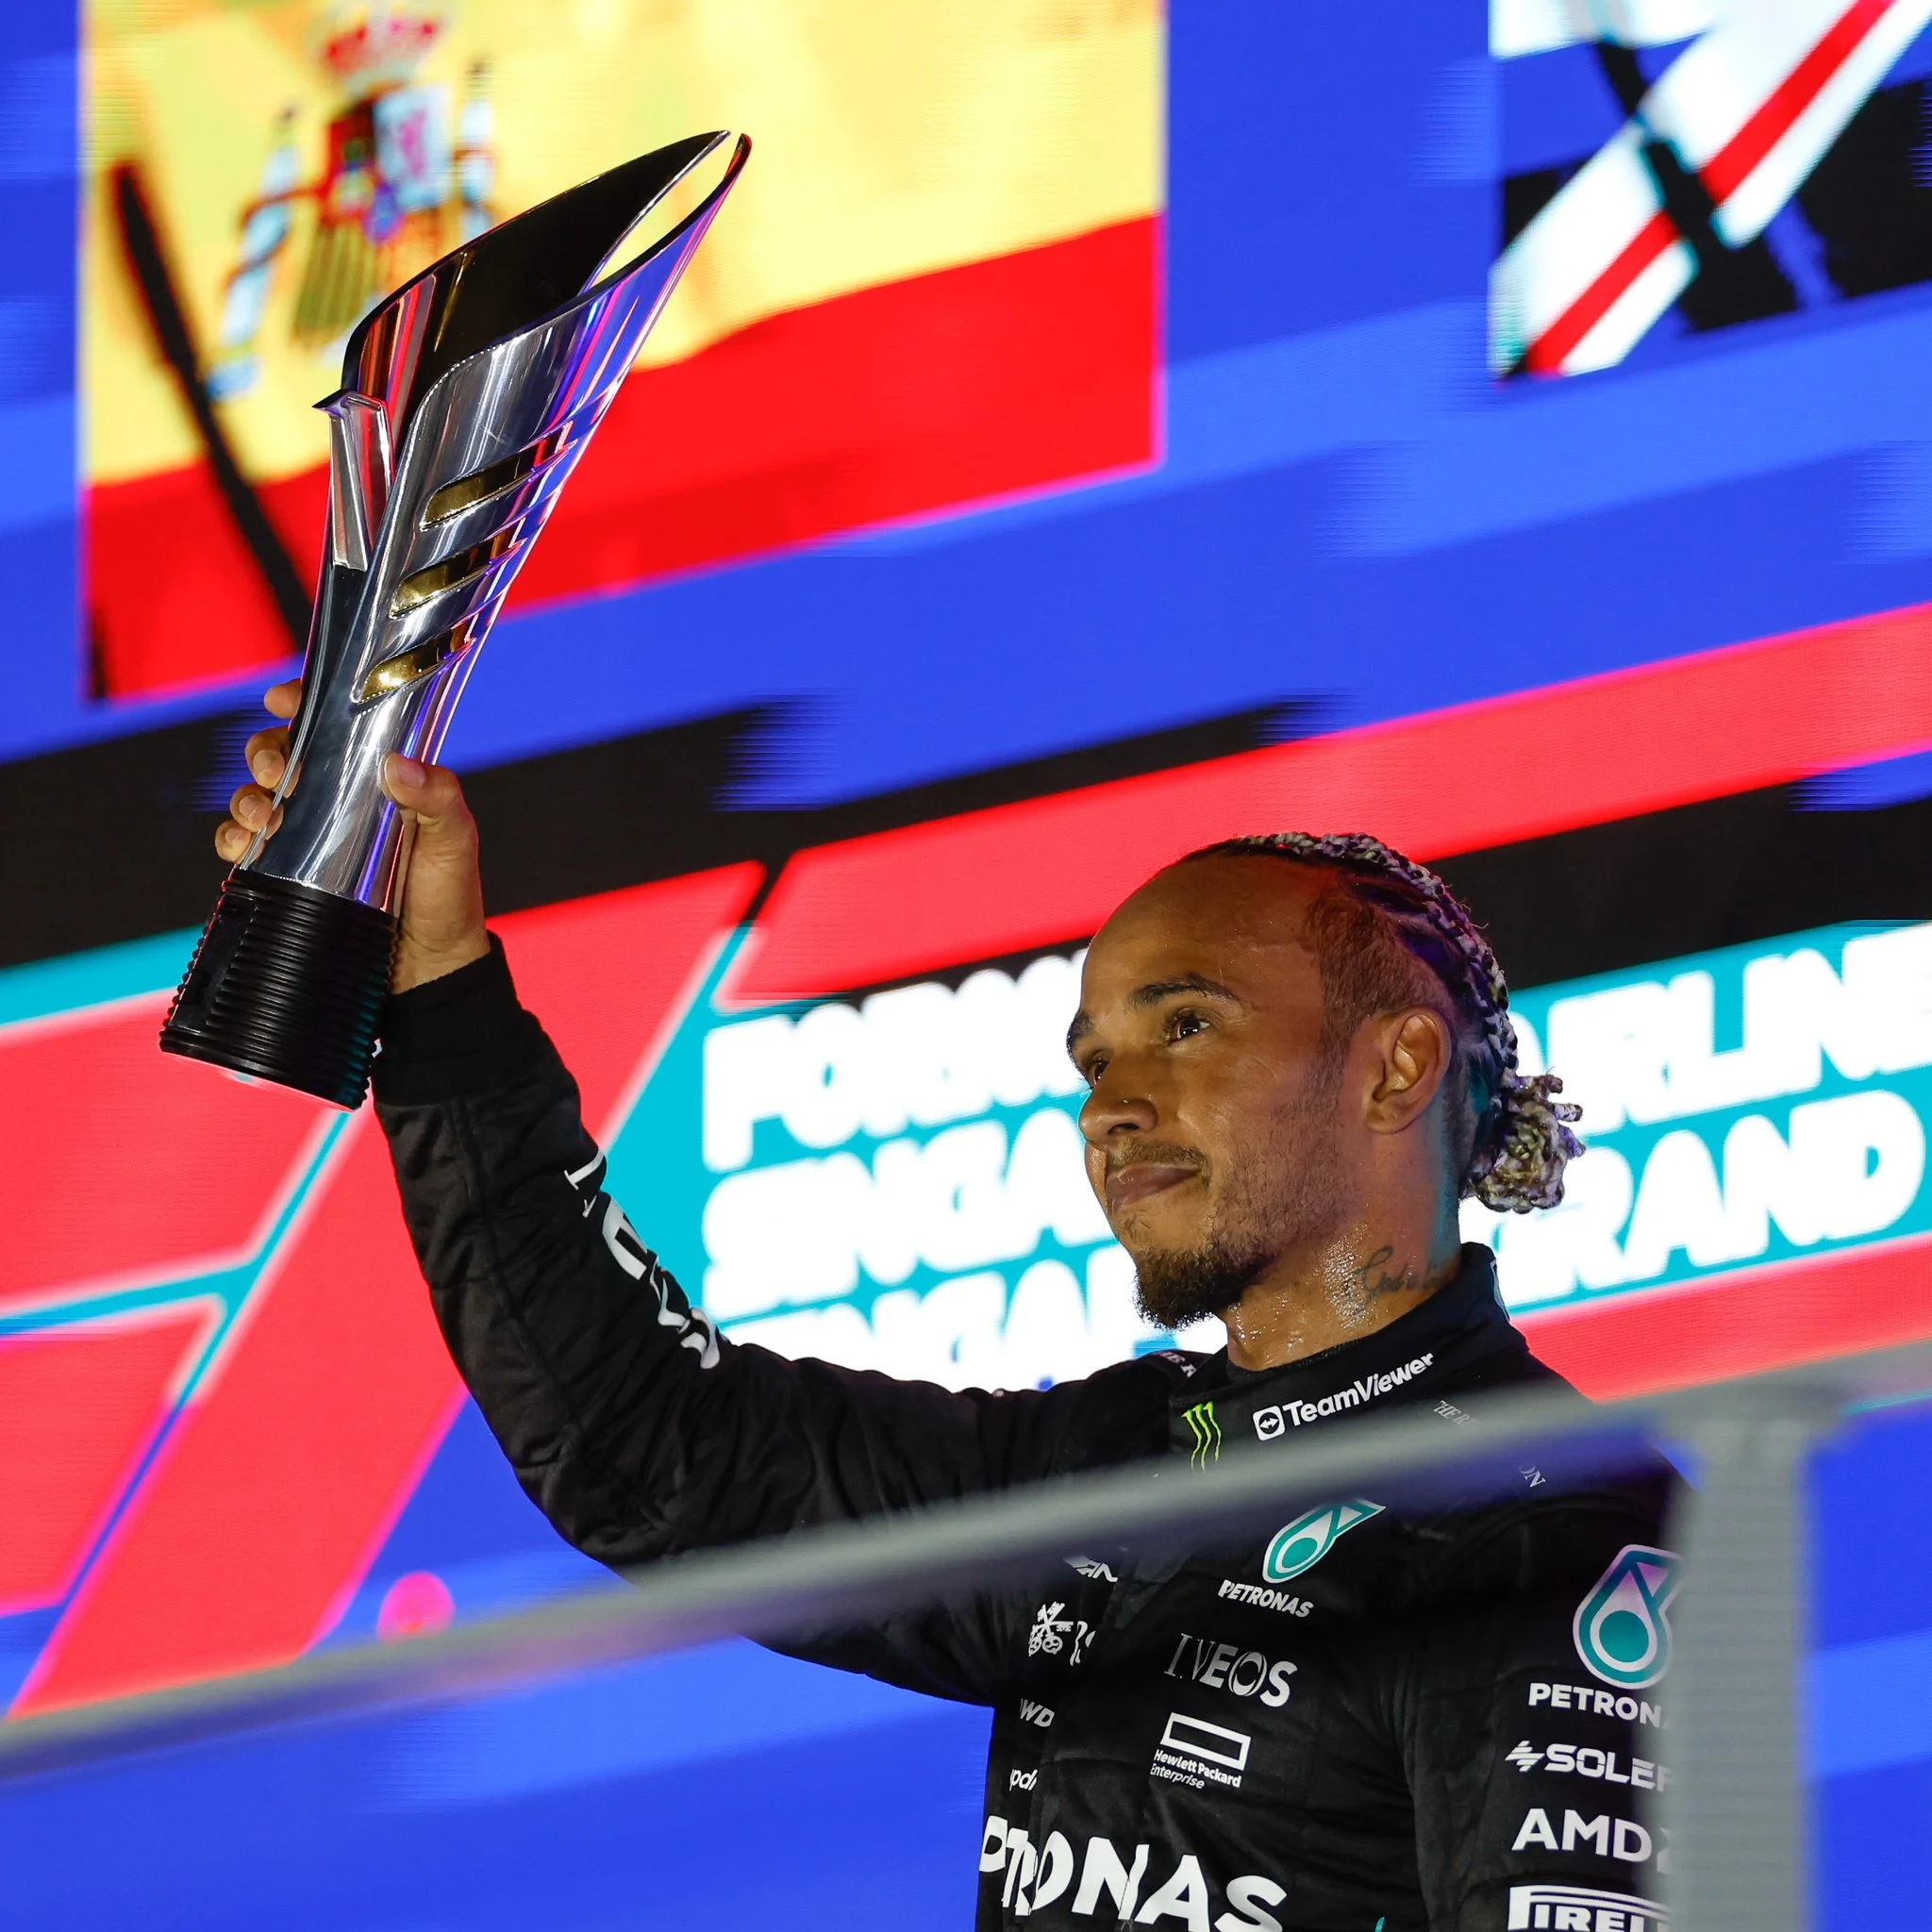 Hamilton sul podio dopo il terzo posto a Singapore